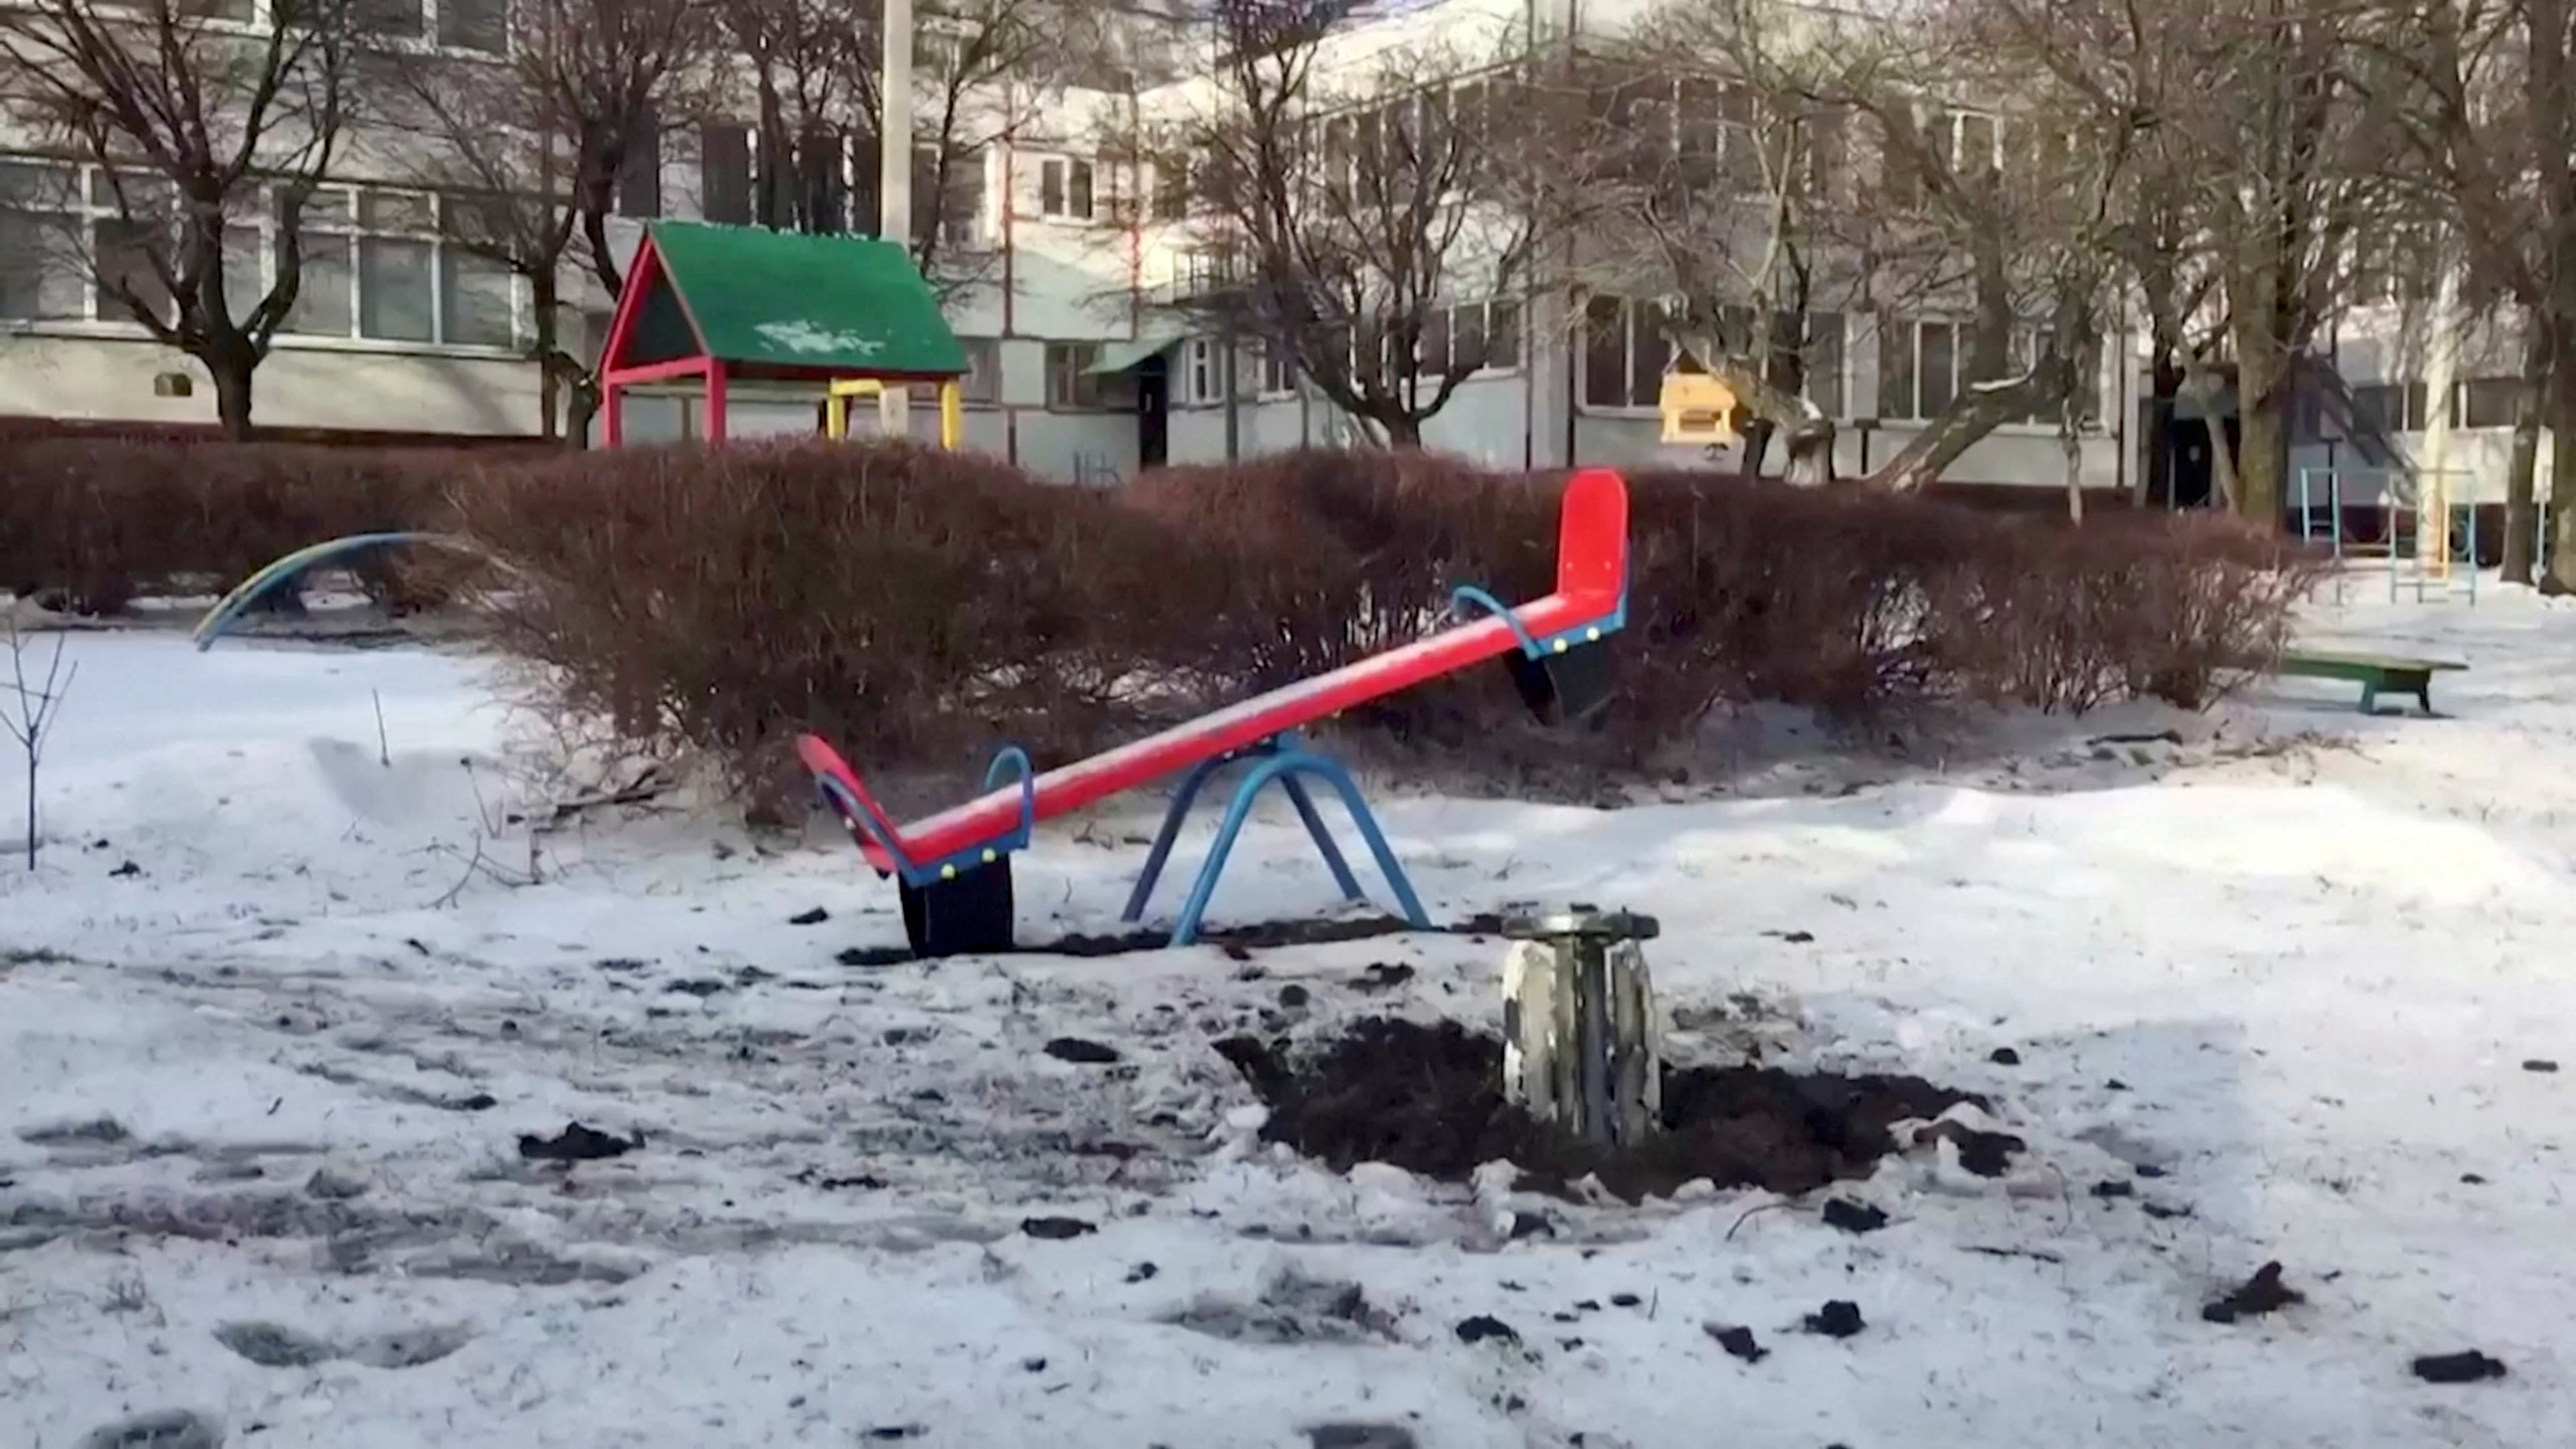 Unexploded Grad rocket is found at kindergarten playground in Kharkiv